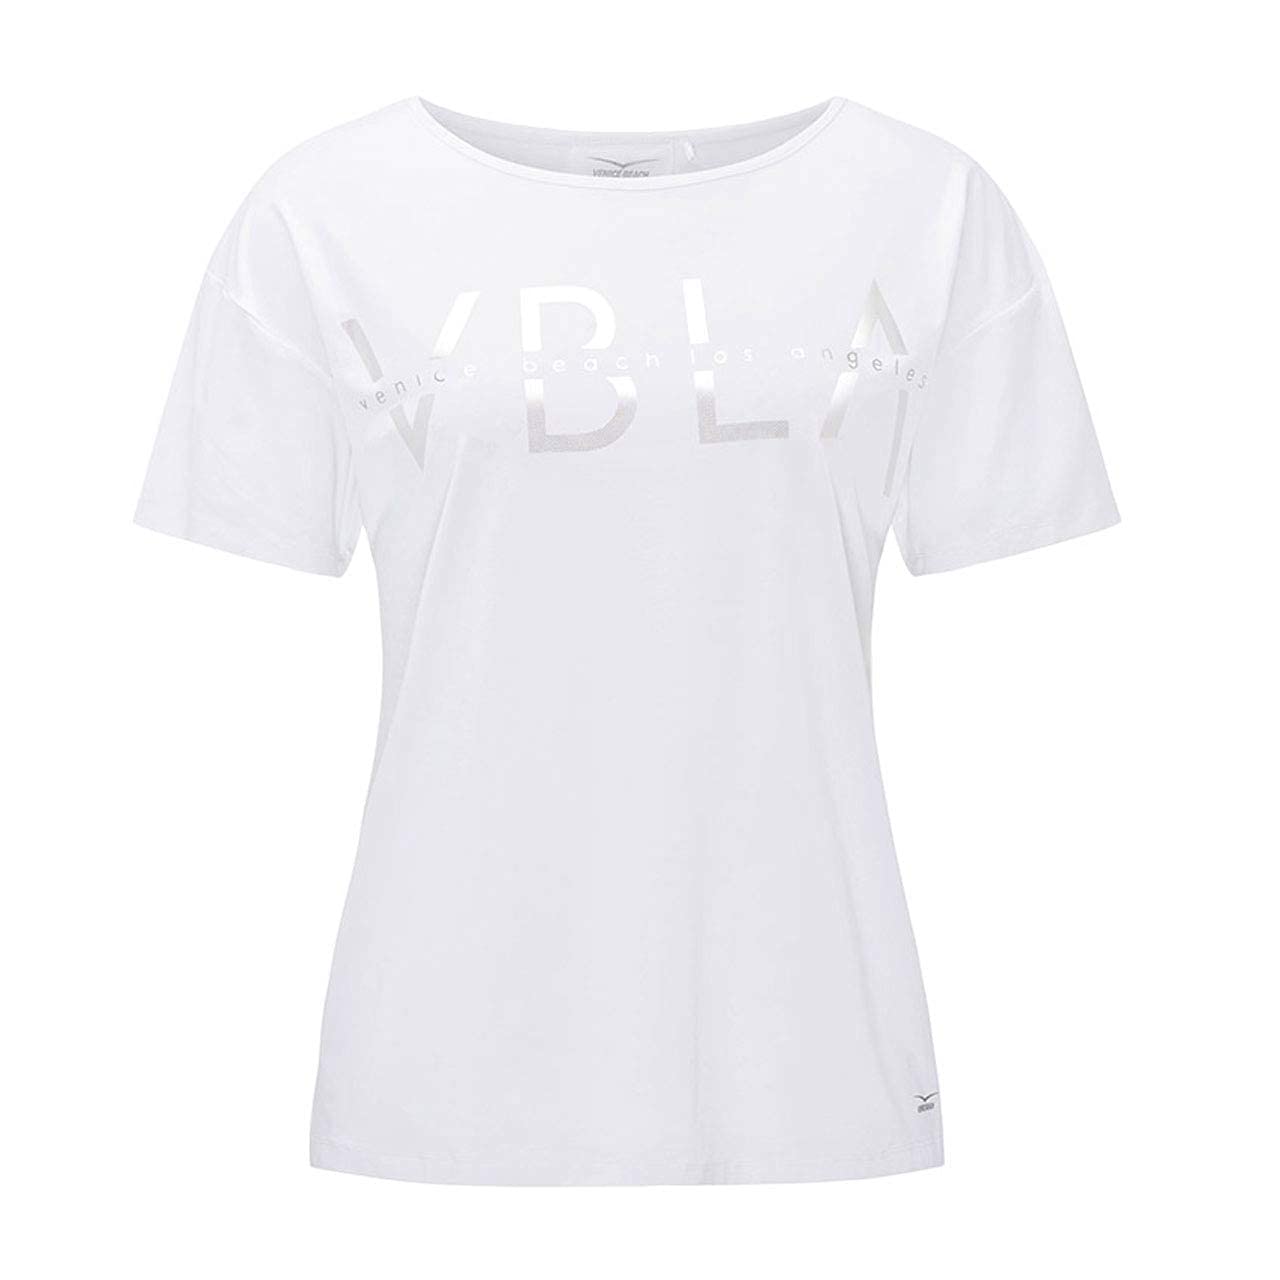 Venice Beach Damen Tiana Shirt T, weiß, 46